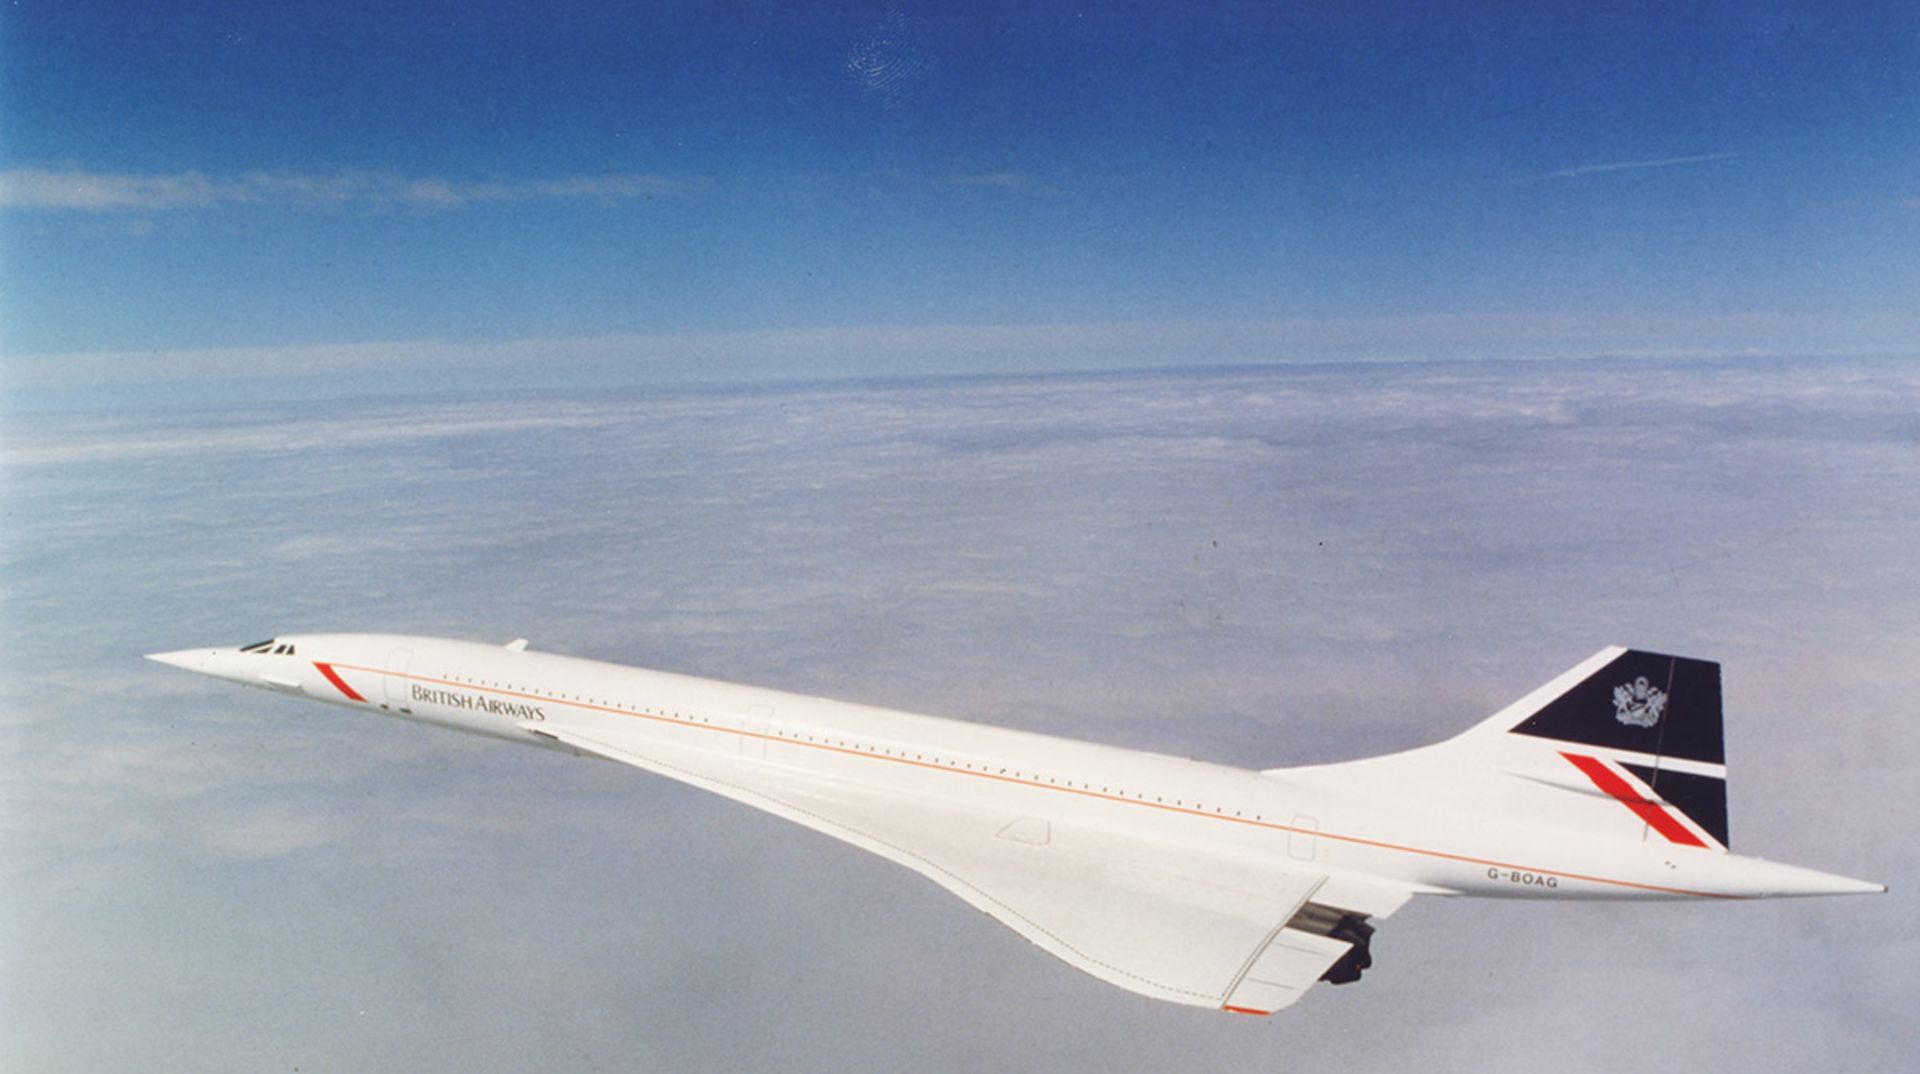 مرجع متخصصين ايران پرواز مافوق صوت در ارتفاع 18 كيلومتري هواپيماي كنكورد